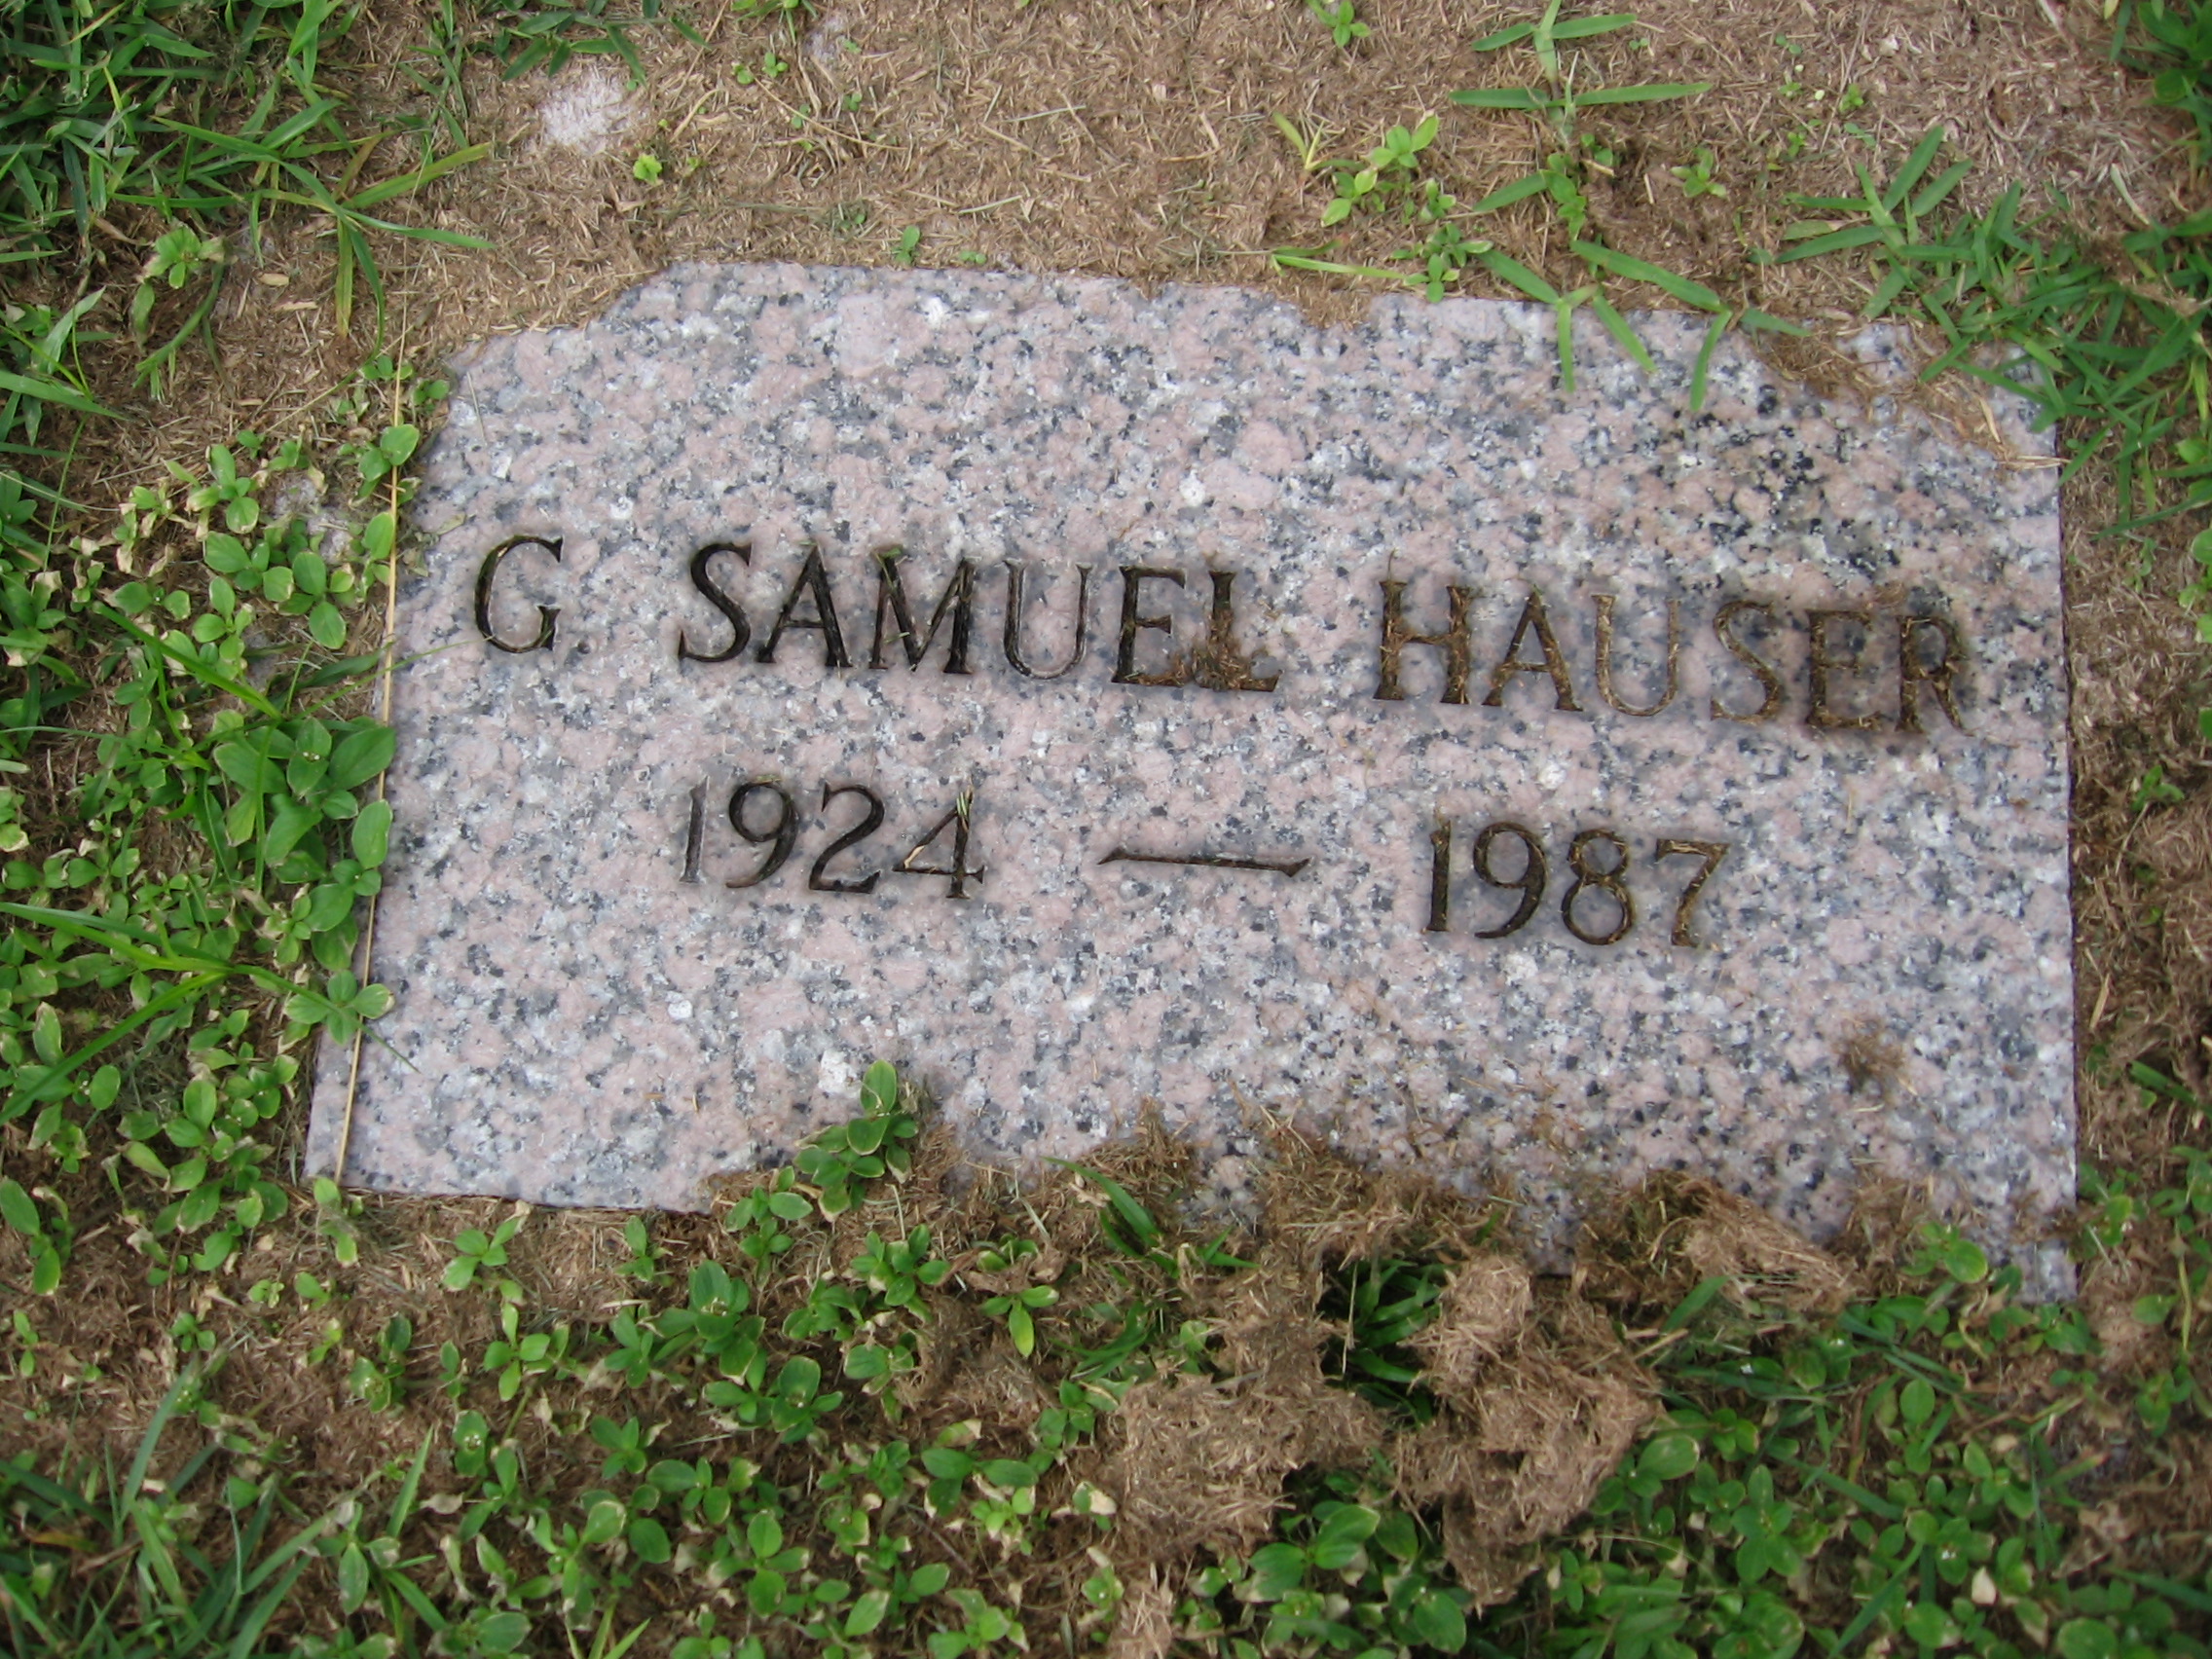 G Samuel Hauser